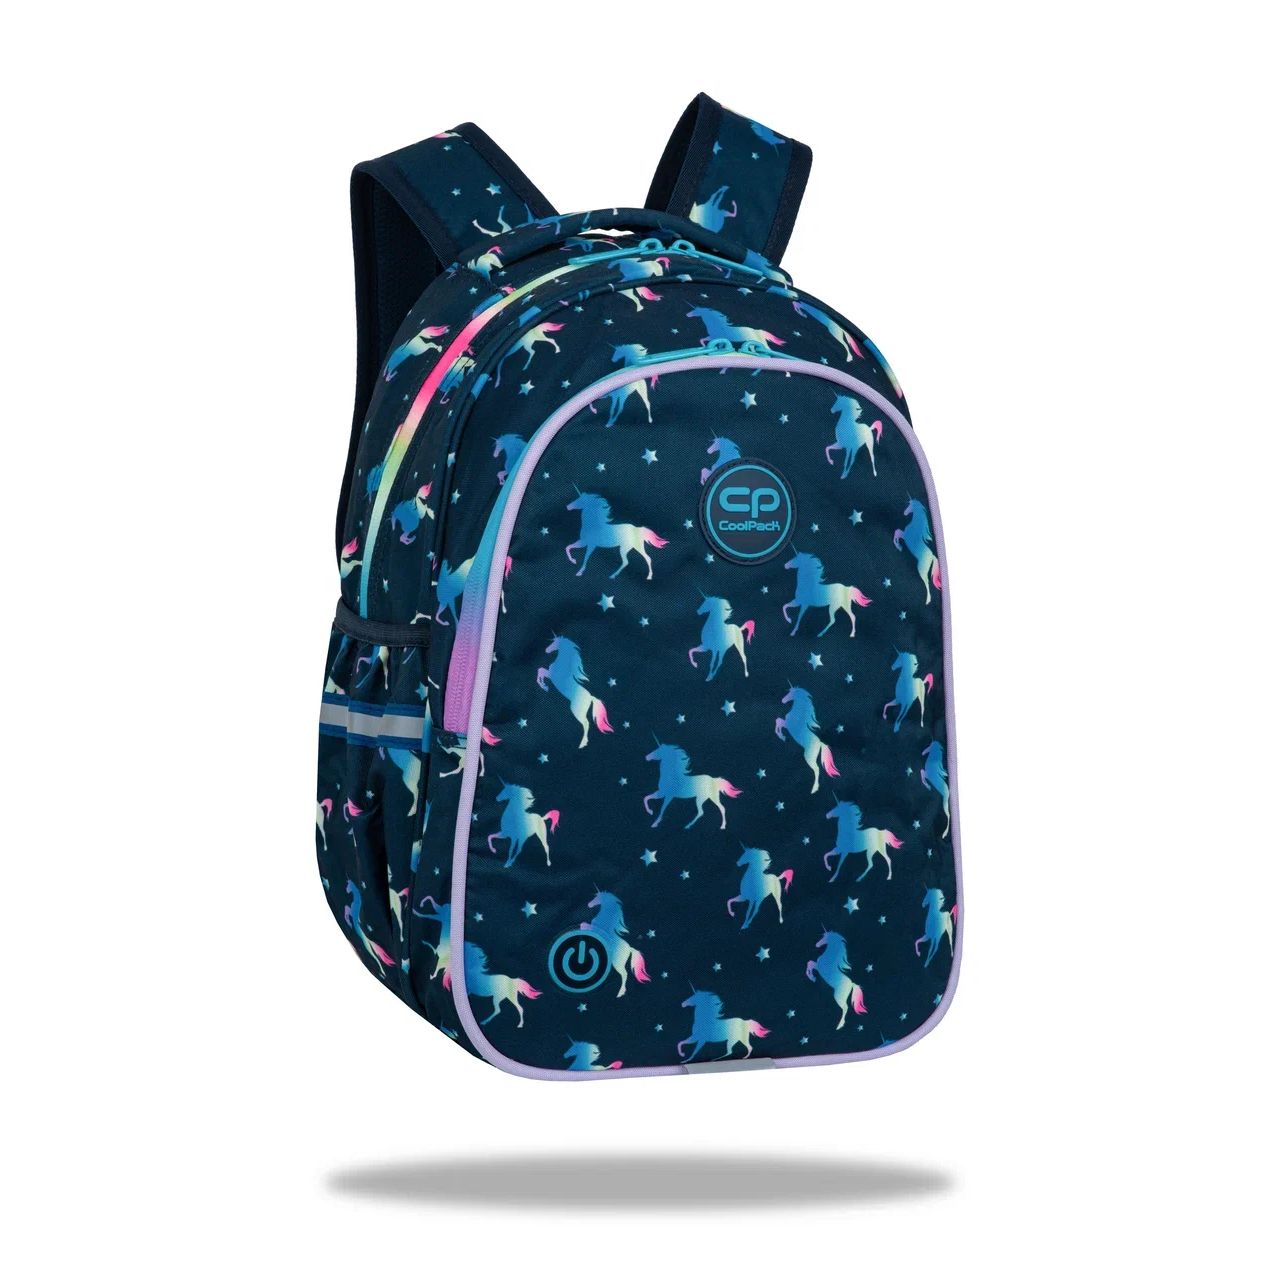 Рюкзак школьный Сool Pack LED, 39х28х17 см, 2 отделения, светодиодная подсветка рюкзак школьный сool pack discovery infragreen 44х32х13 см 30 л 2 отделения